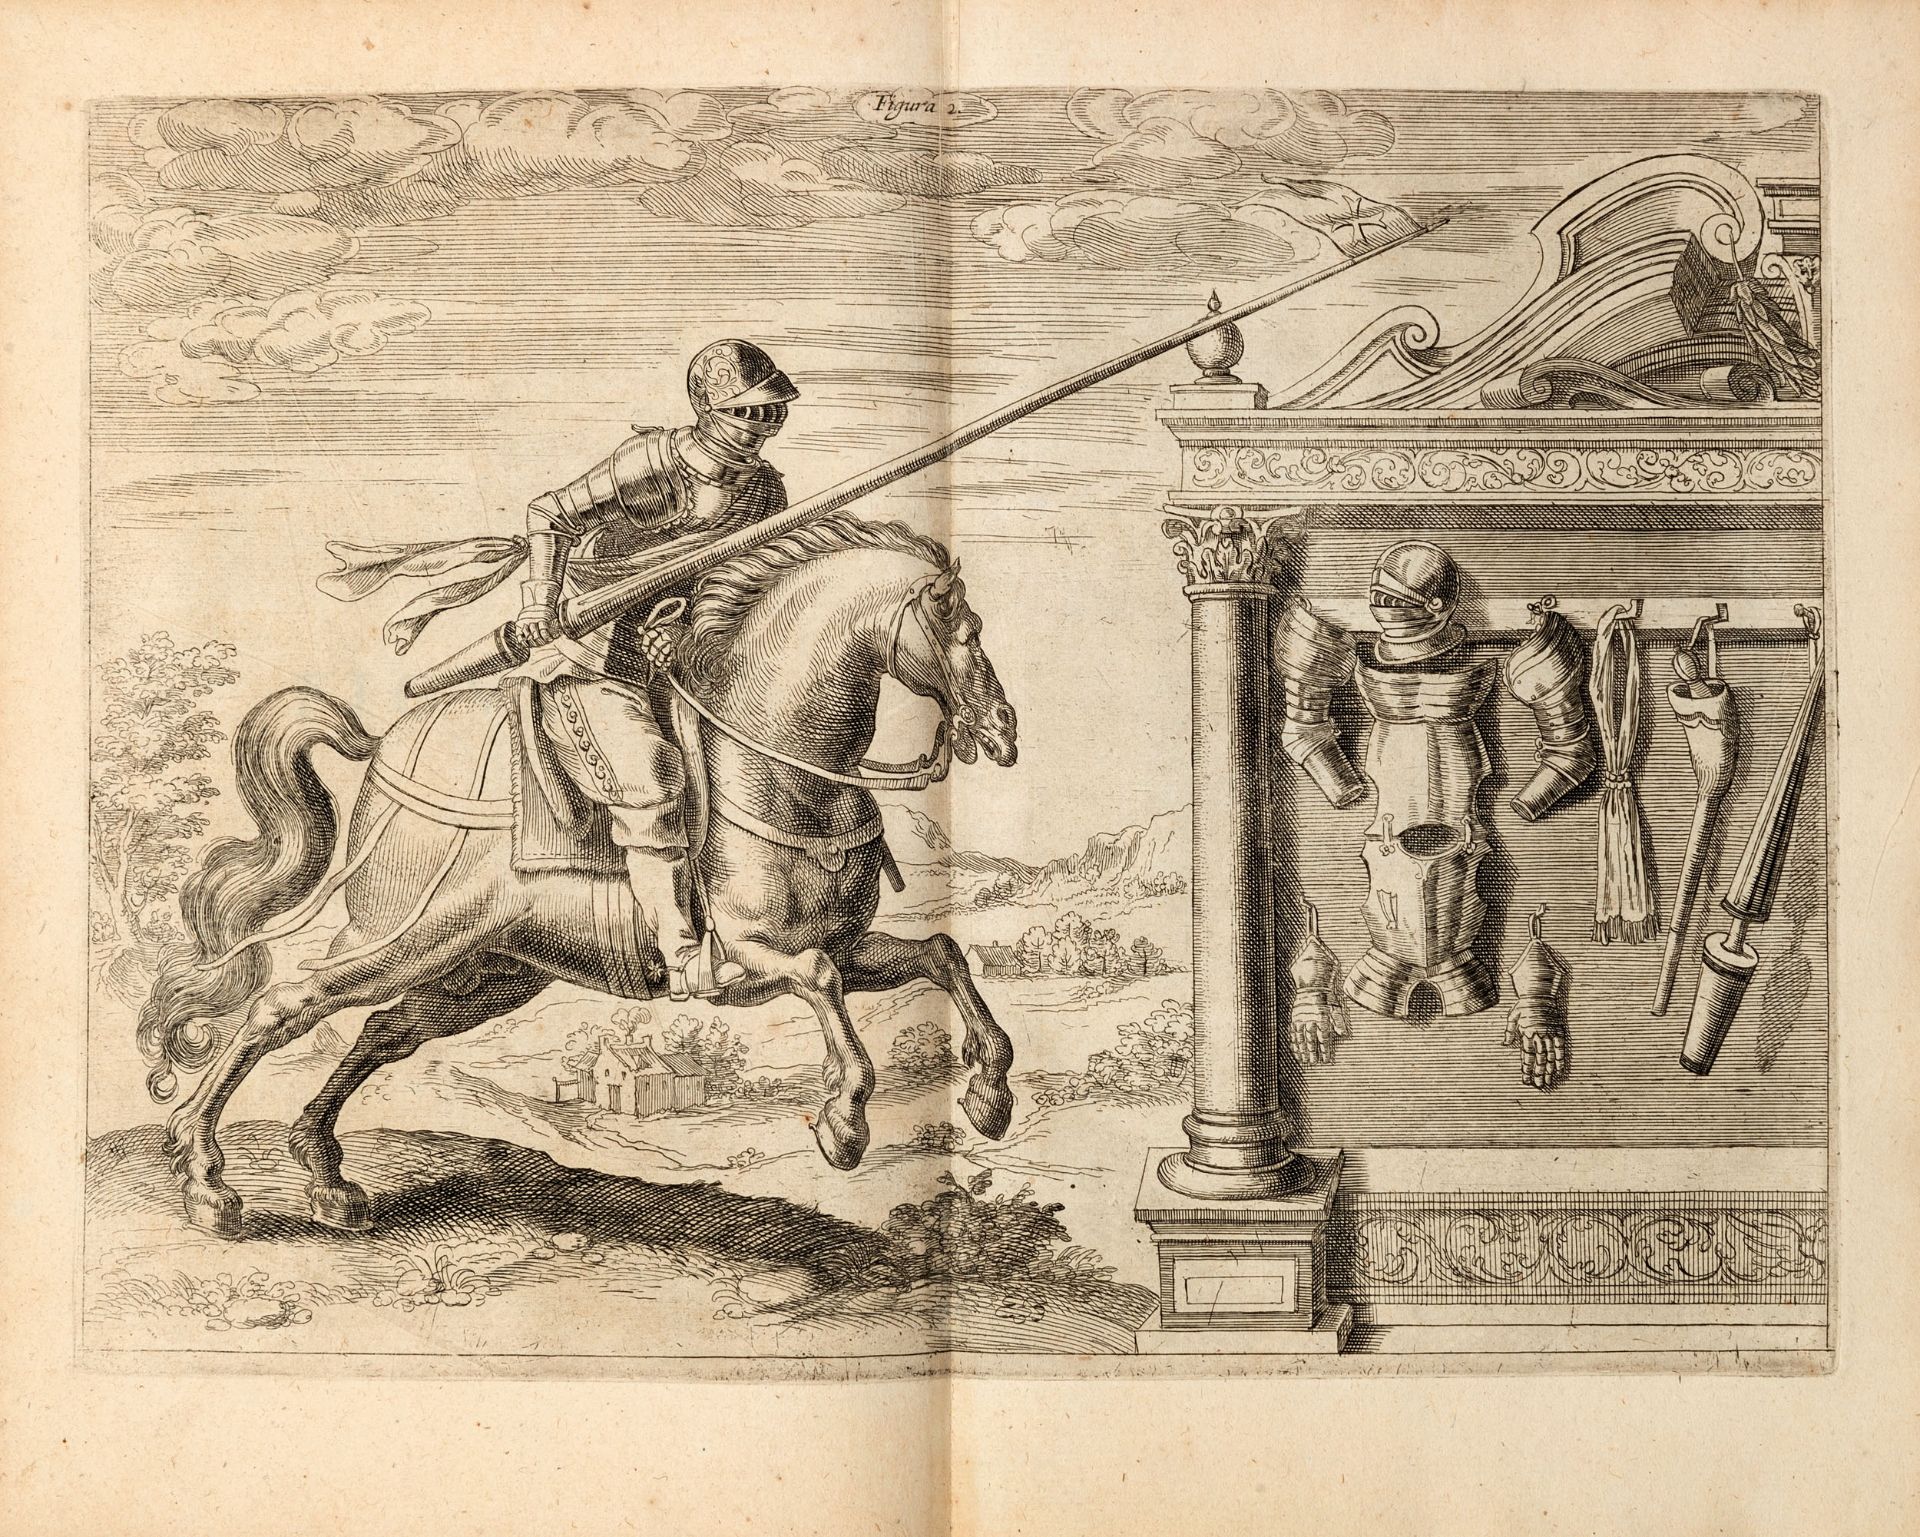 [MILITARIA] MELZO, Ludovico (1567-1617). Regole militari. Antwerp: Trognaesio, 1611.